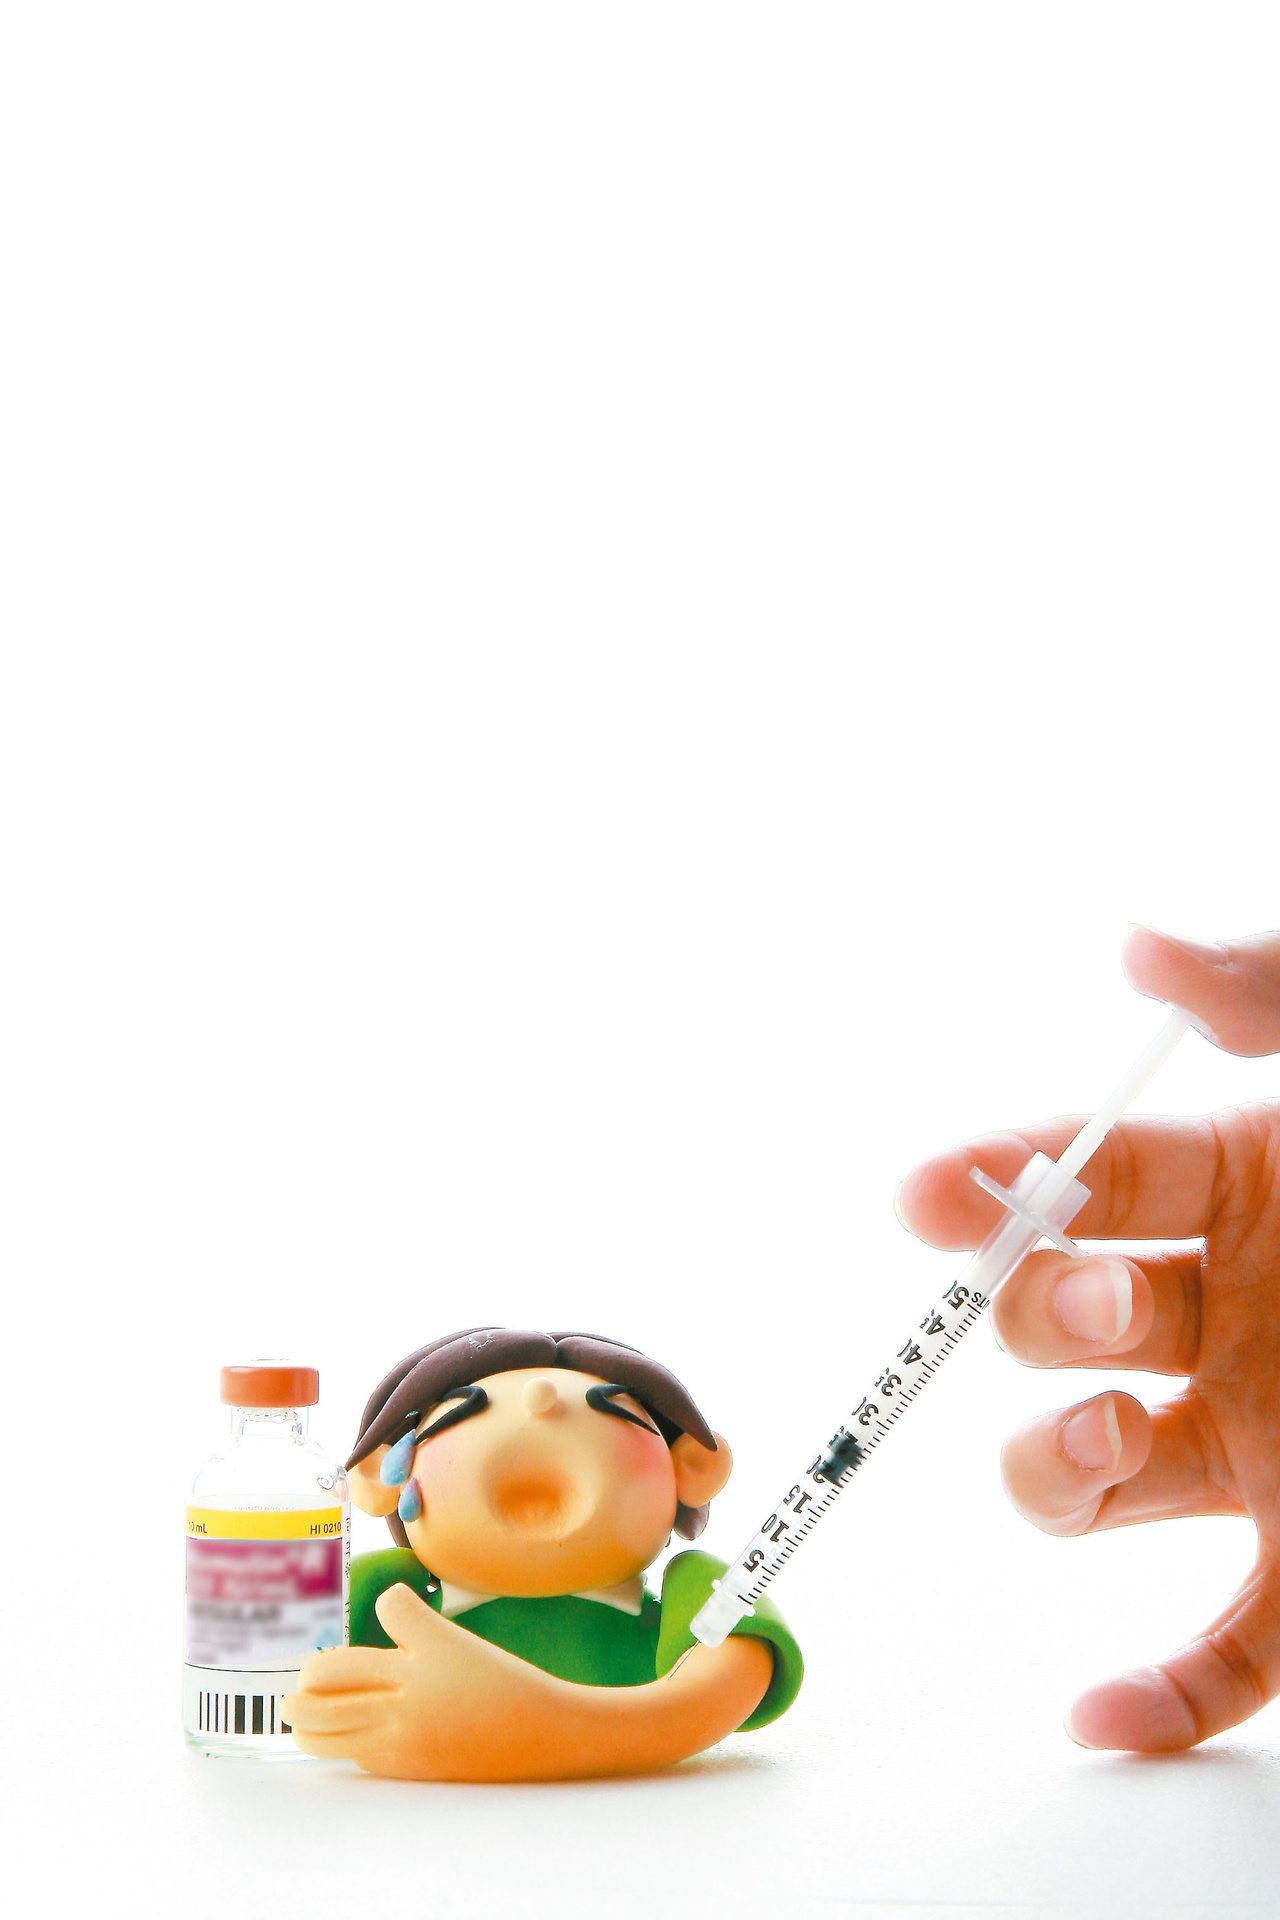 經由醫師評估用藥，若病人可以接受，甚至可以一開始診斷糖尿病就搭配使用胰島素。